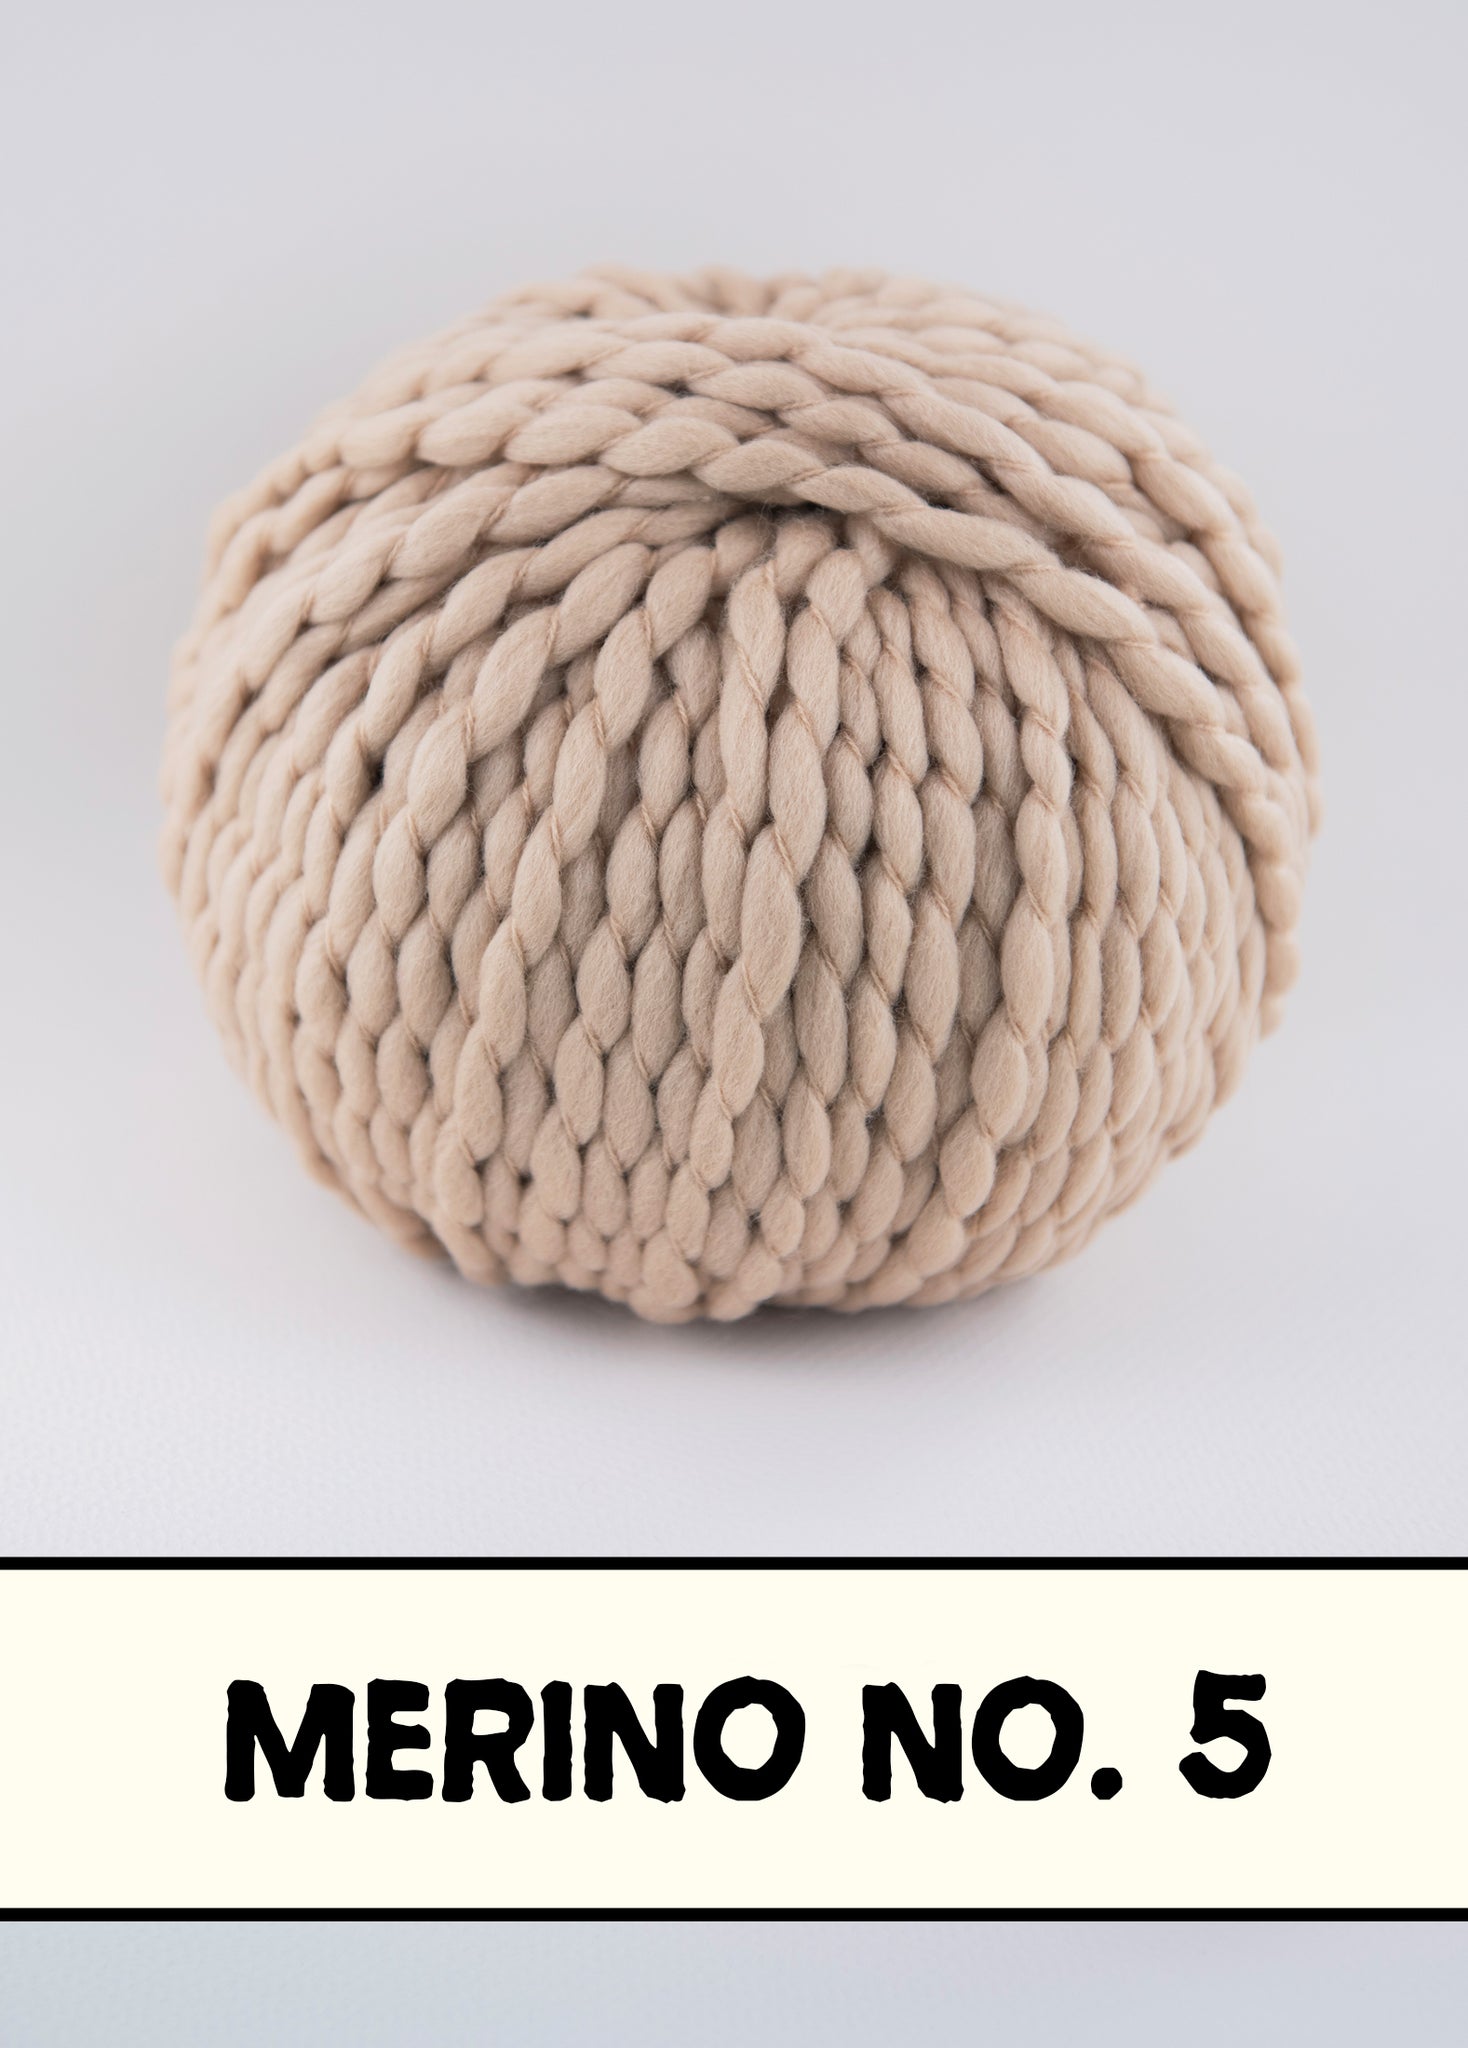 Merino No. 5